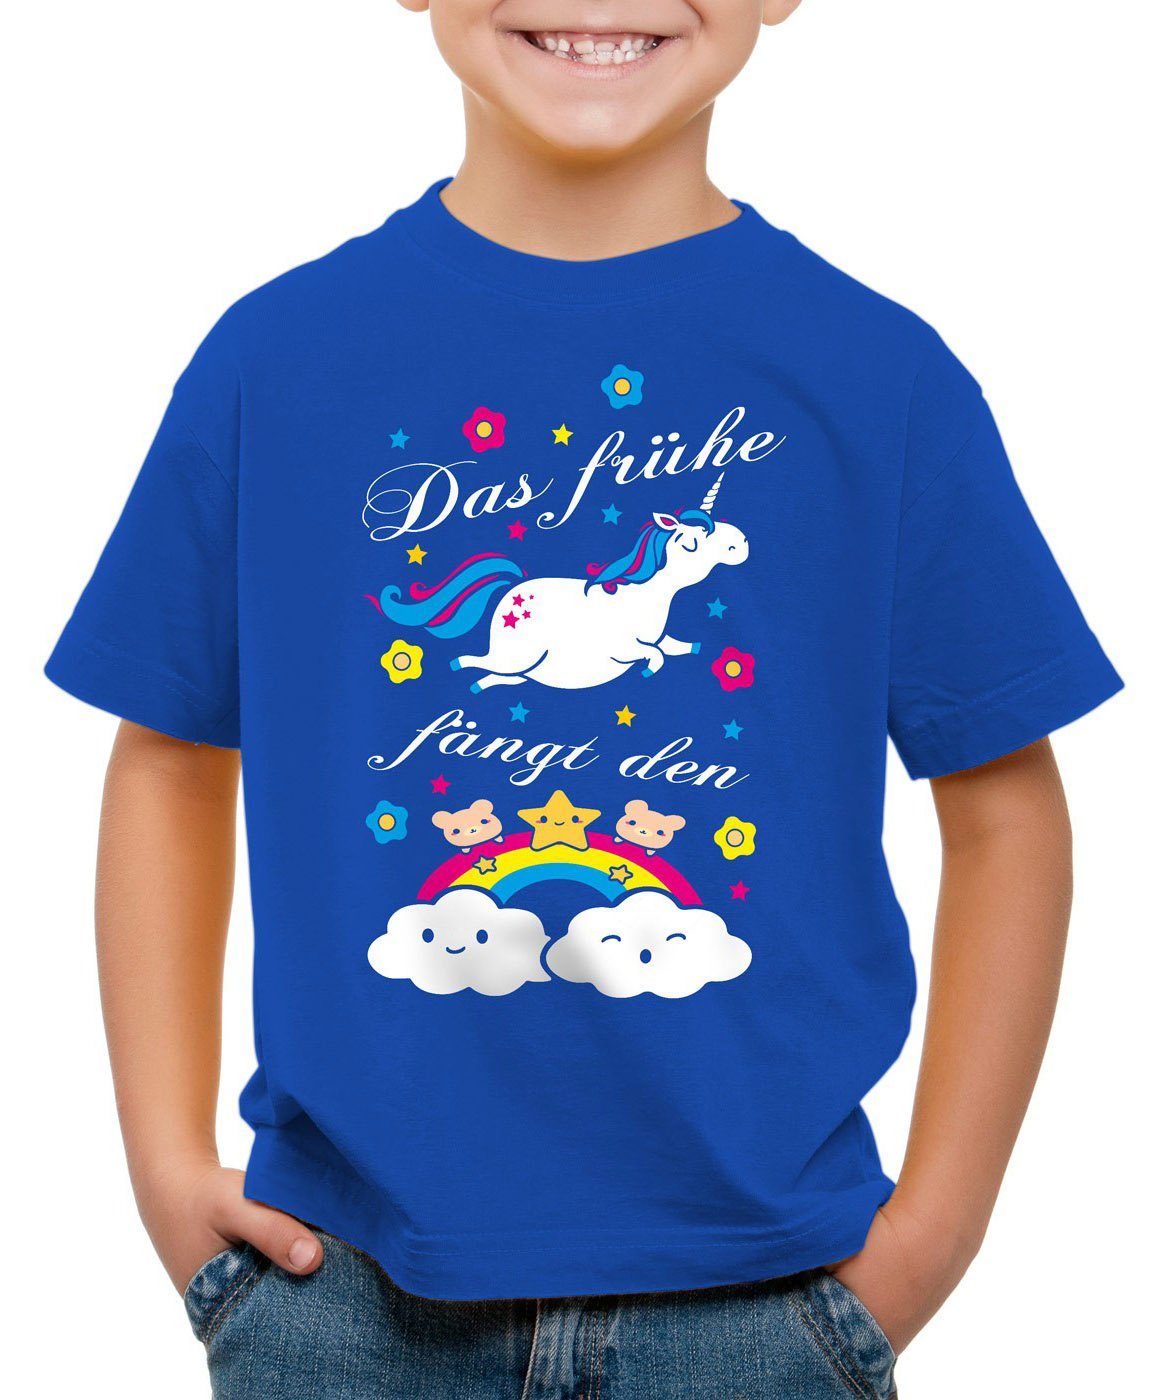 Print-Shirt Unicorn fun fängt süß bärchen frühe style3 Einhorn Kinder Das Regenbogen T-Shirt blau spruch